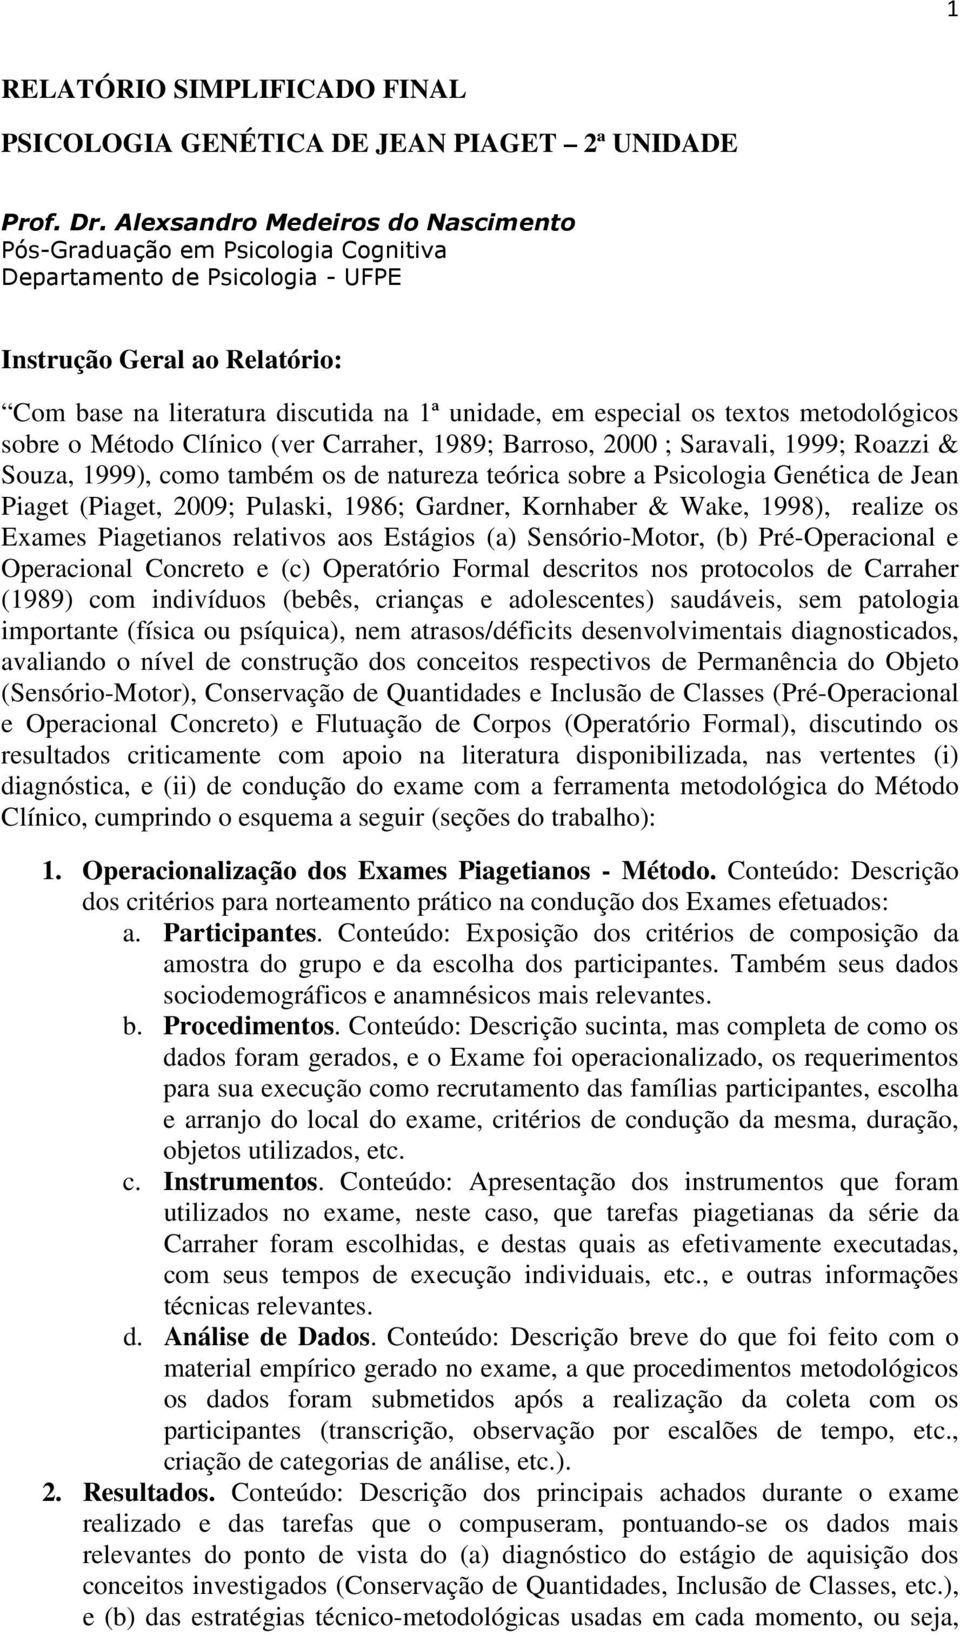 textos metodológicos sobre o Método Clínico (ver Carraher, 1989; Barroso, 2000 ; Saravali, 1999; Roazzi & Souza, 1999), como também os de natureza teórica sobre a Psicologia Genética de Jean Piaget